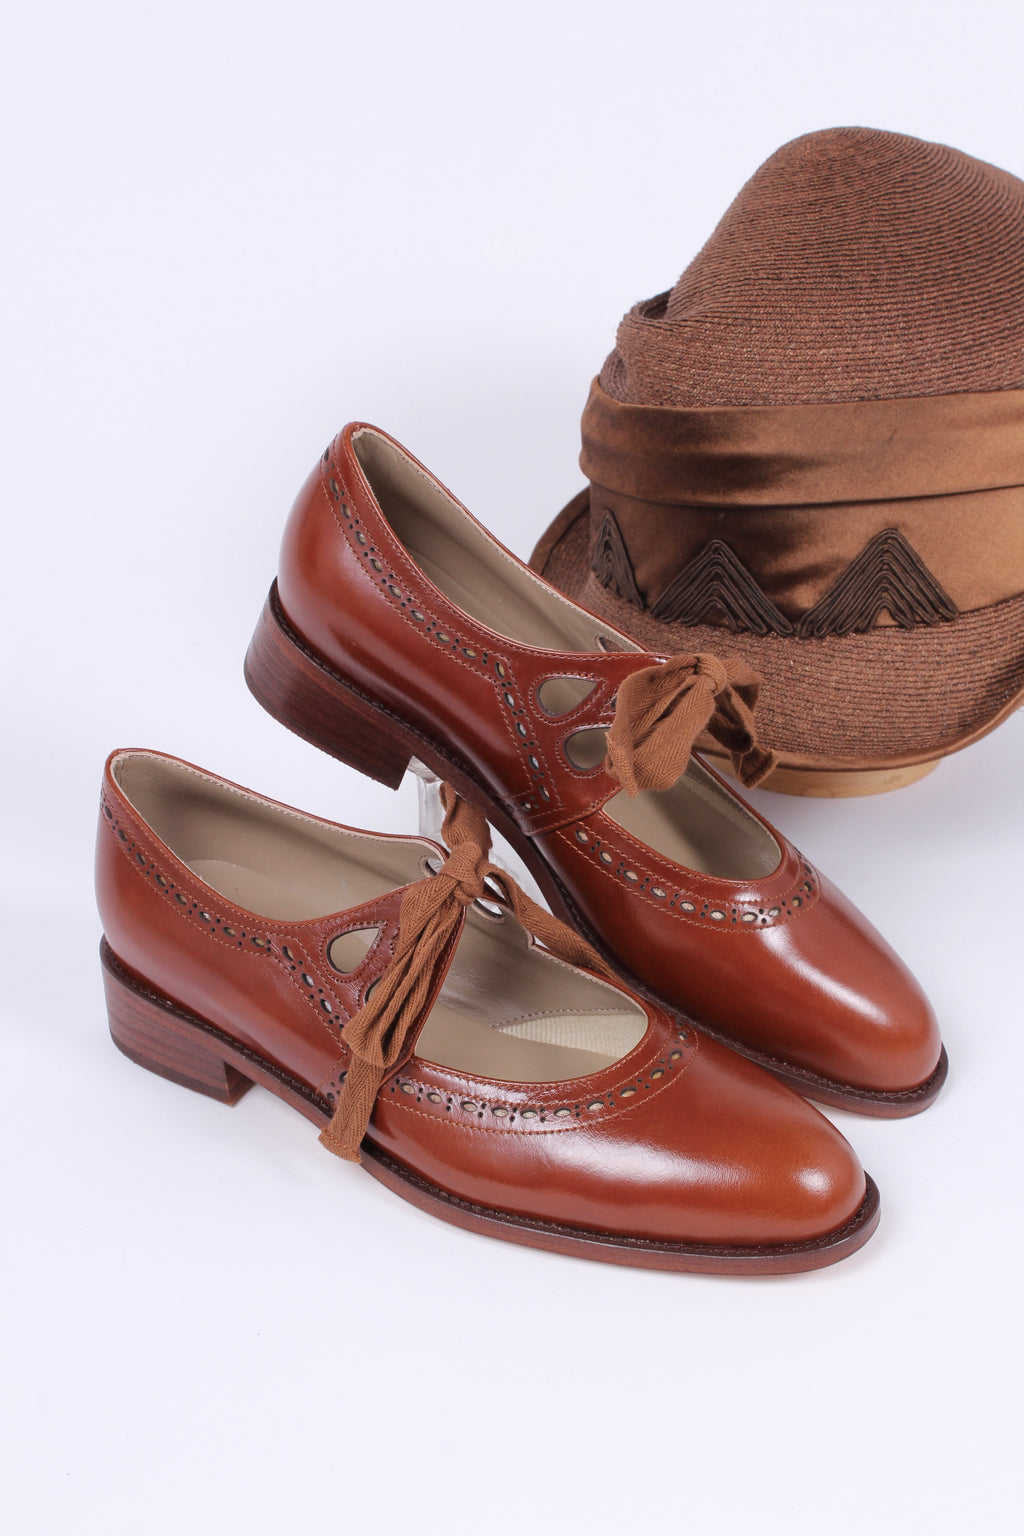 Lindy Shopper  Shoes, Vintage shoes, Tap shoes